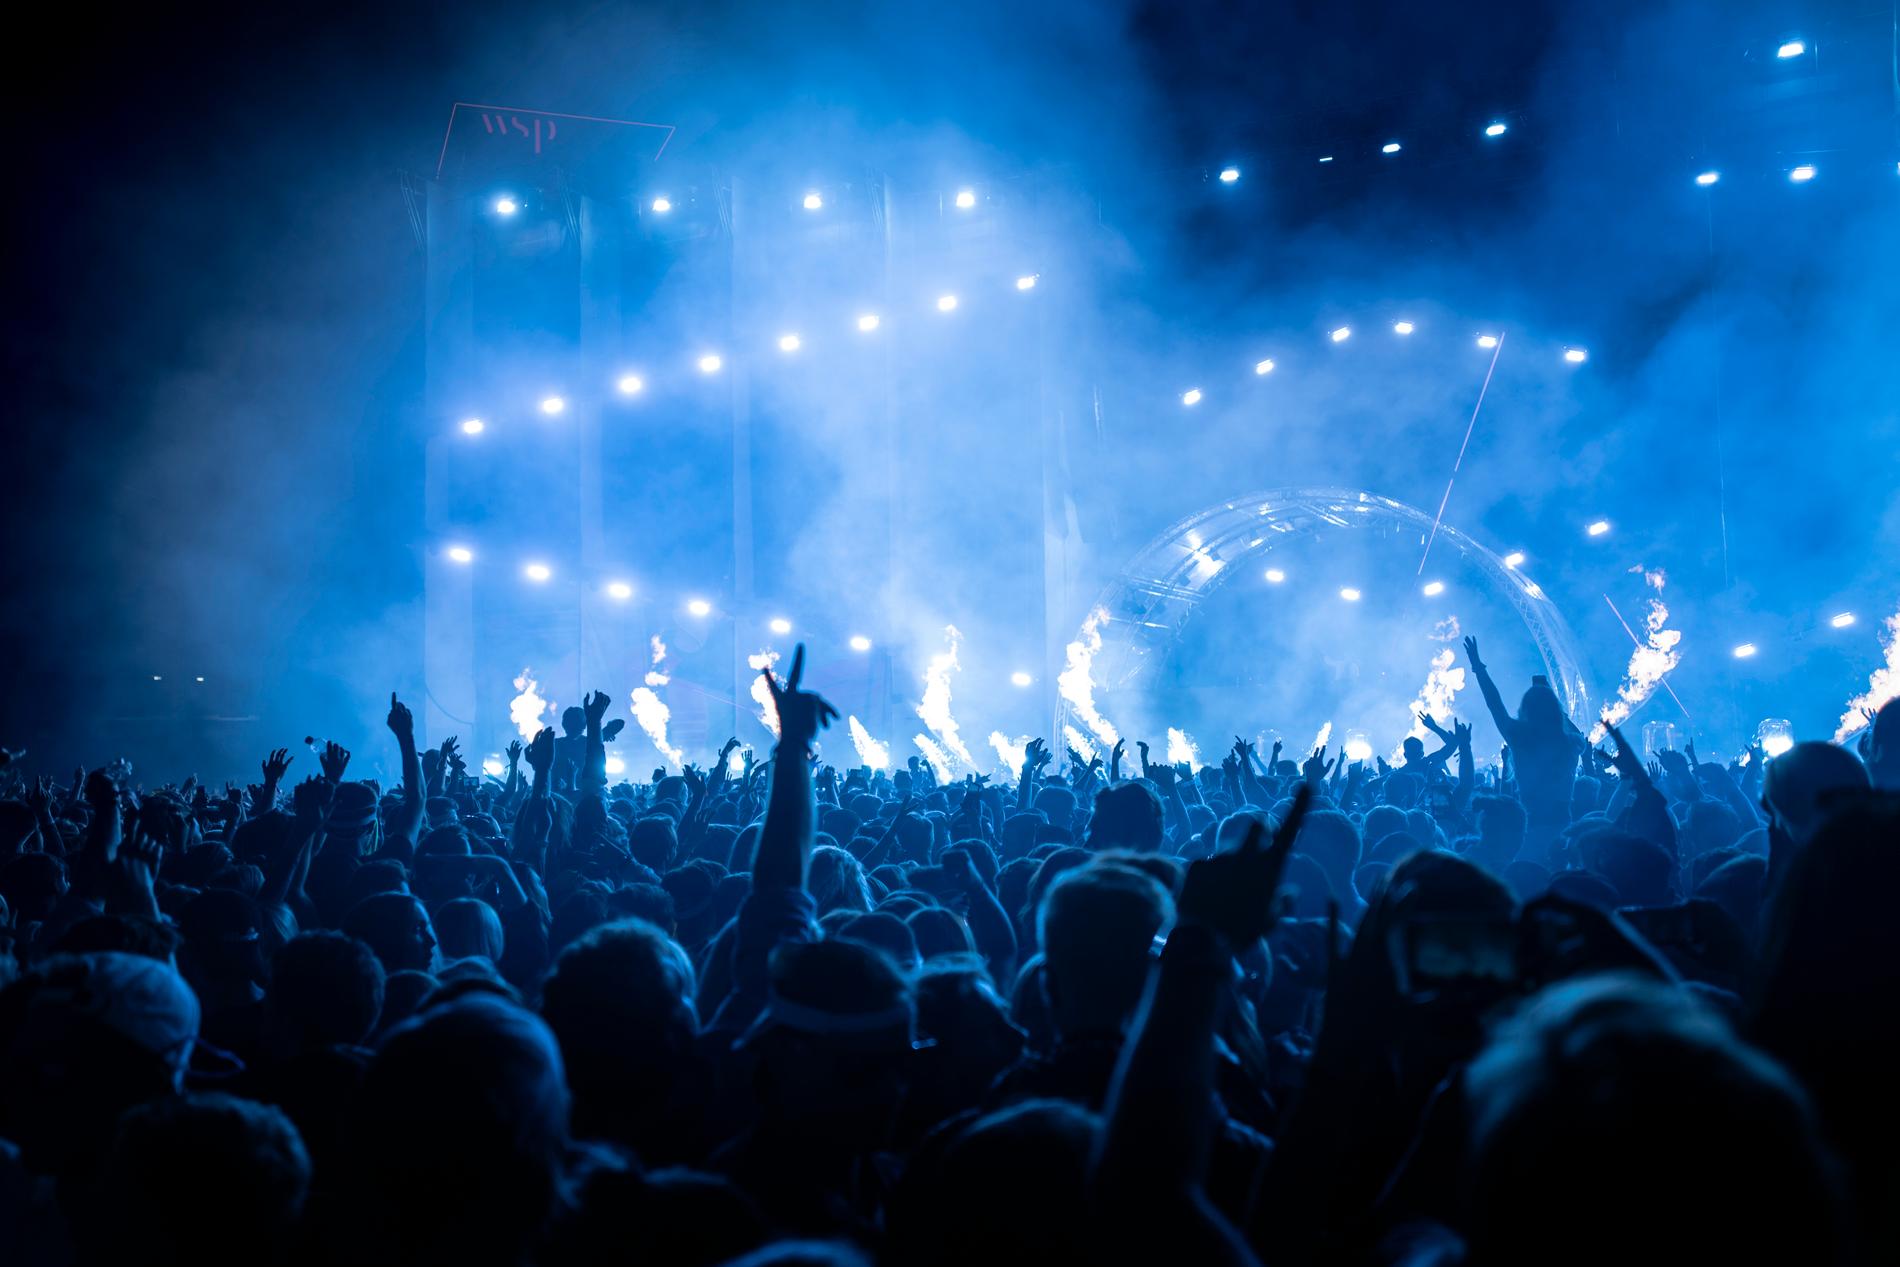 Årets Summerburst blir ett digitalt evenemang, där publiken kommer att kunna chatta med artisterna medan konserterna pågår. Arkivbild.